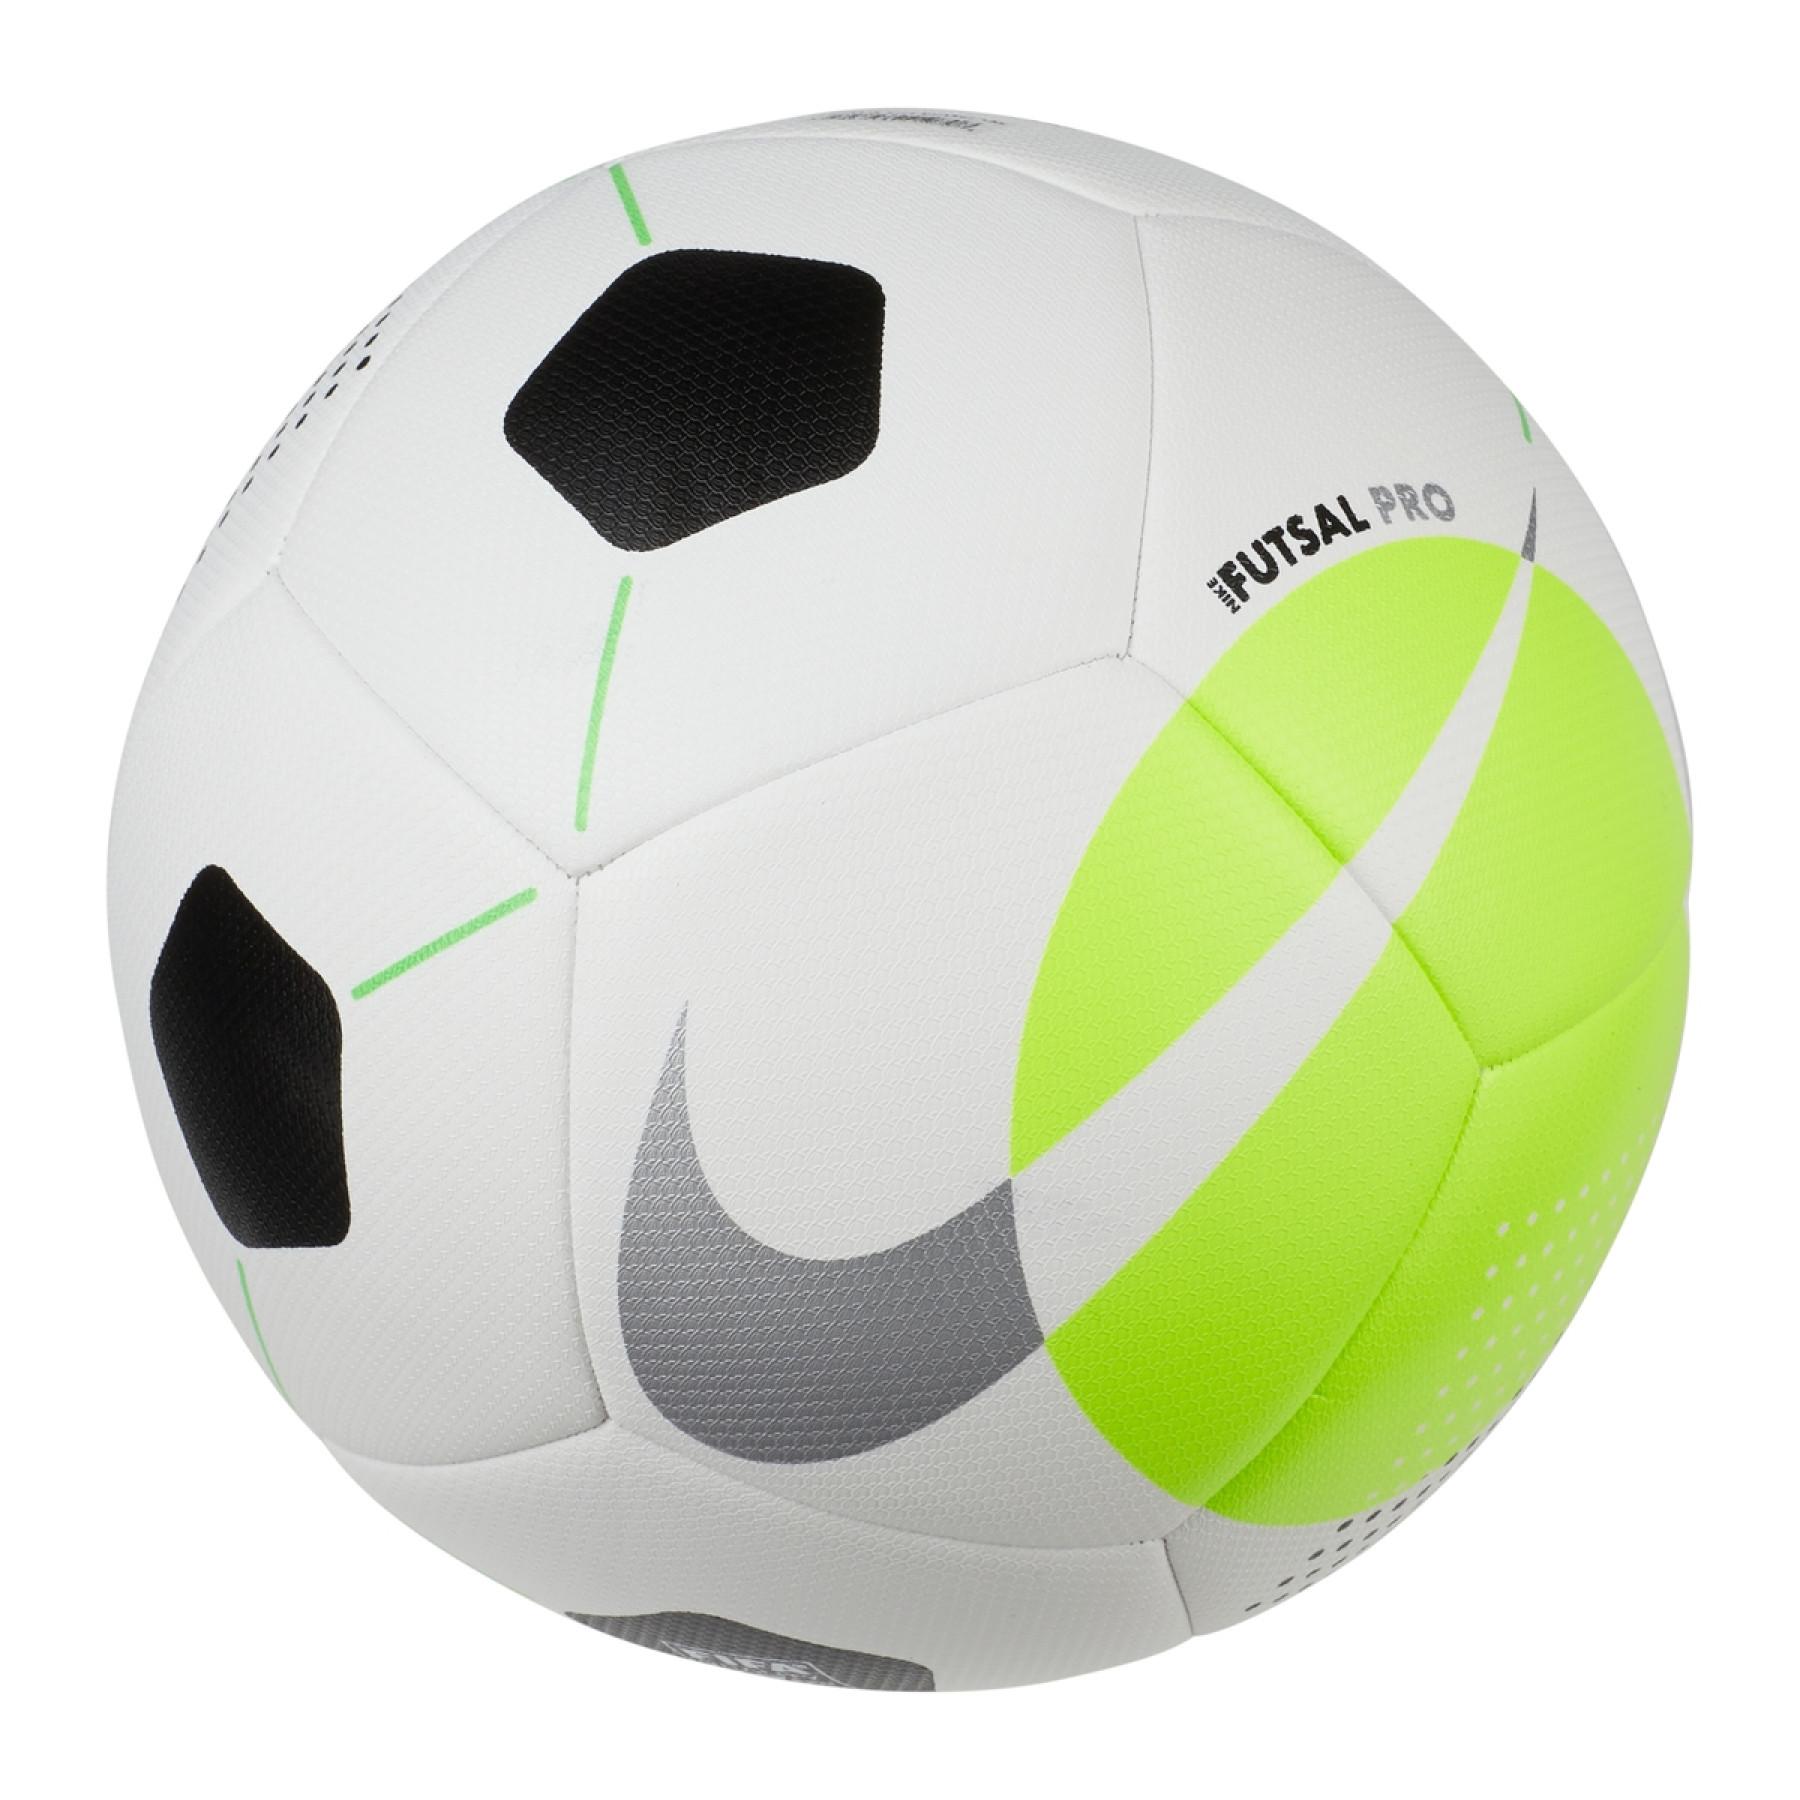 Ballon de foot vert Nike Pitch Team Taille 5 | Espace des Marques